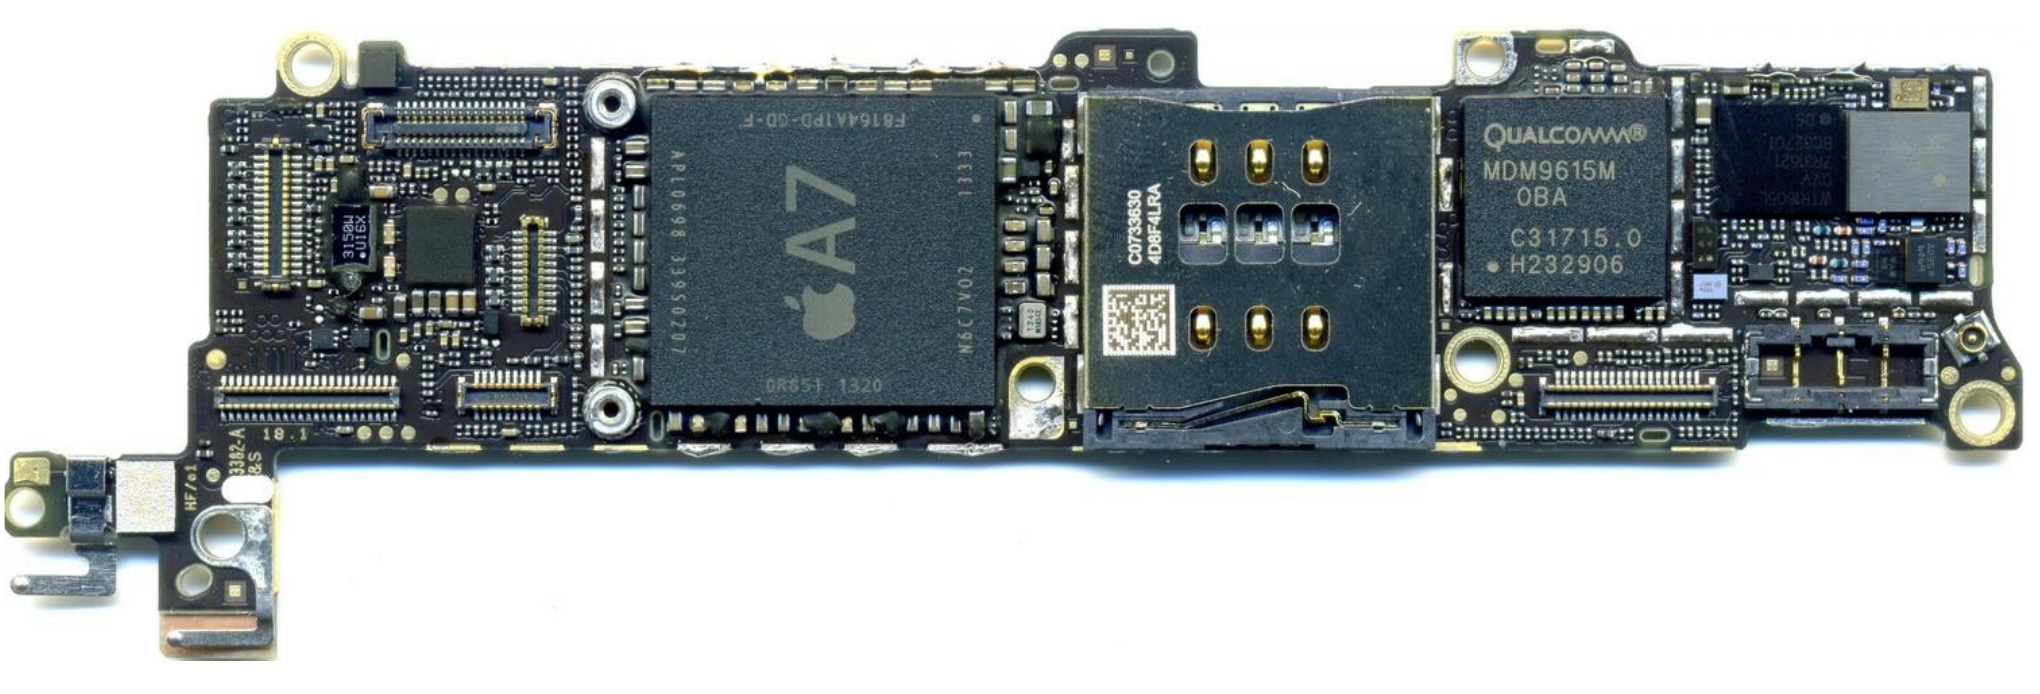 Плата Apple iPhone 5S с модемом Qualcomm MDM9615 и радиочастотным трансивером Qualcomm WTR1605L (справа, источник ifixit.com)